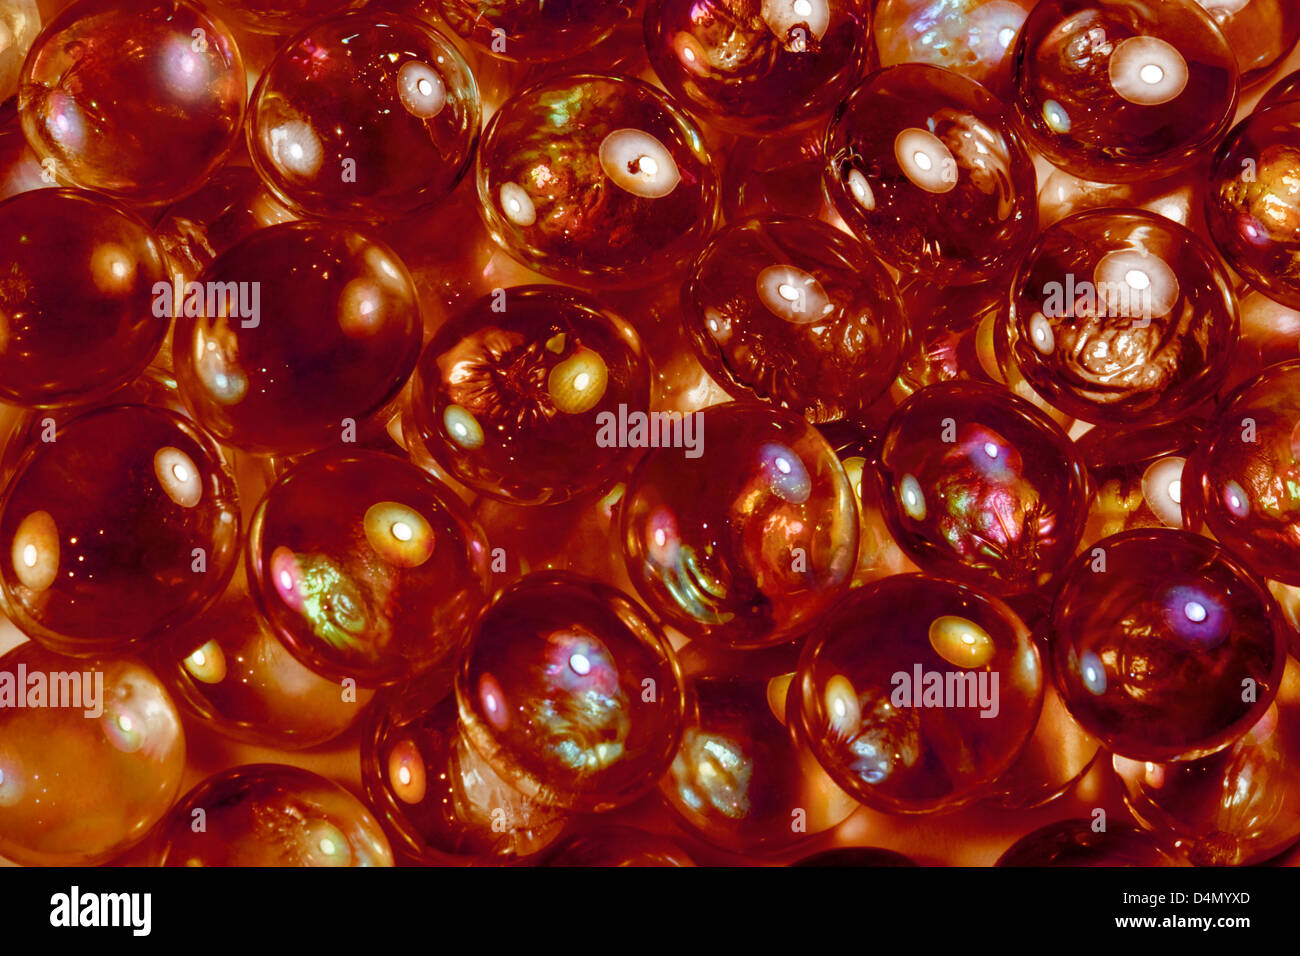 Résumé fond plein cadre photo avec perles de verre rouge irisé Banque D'Images